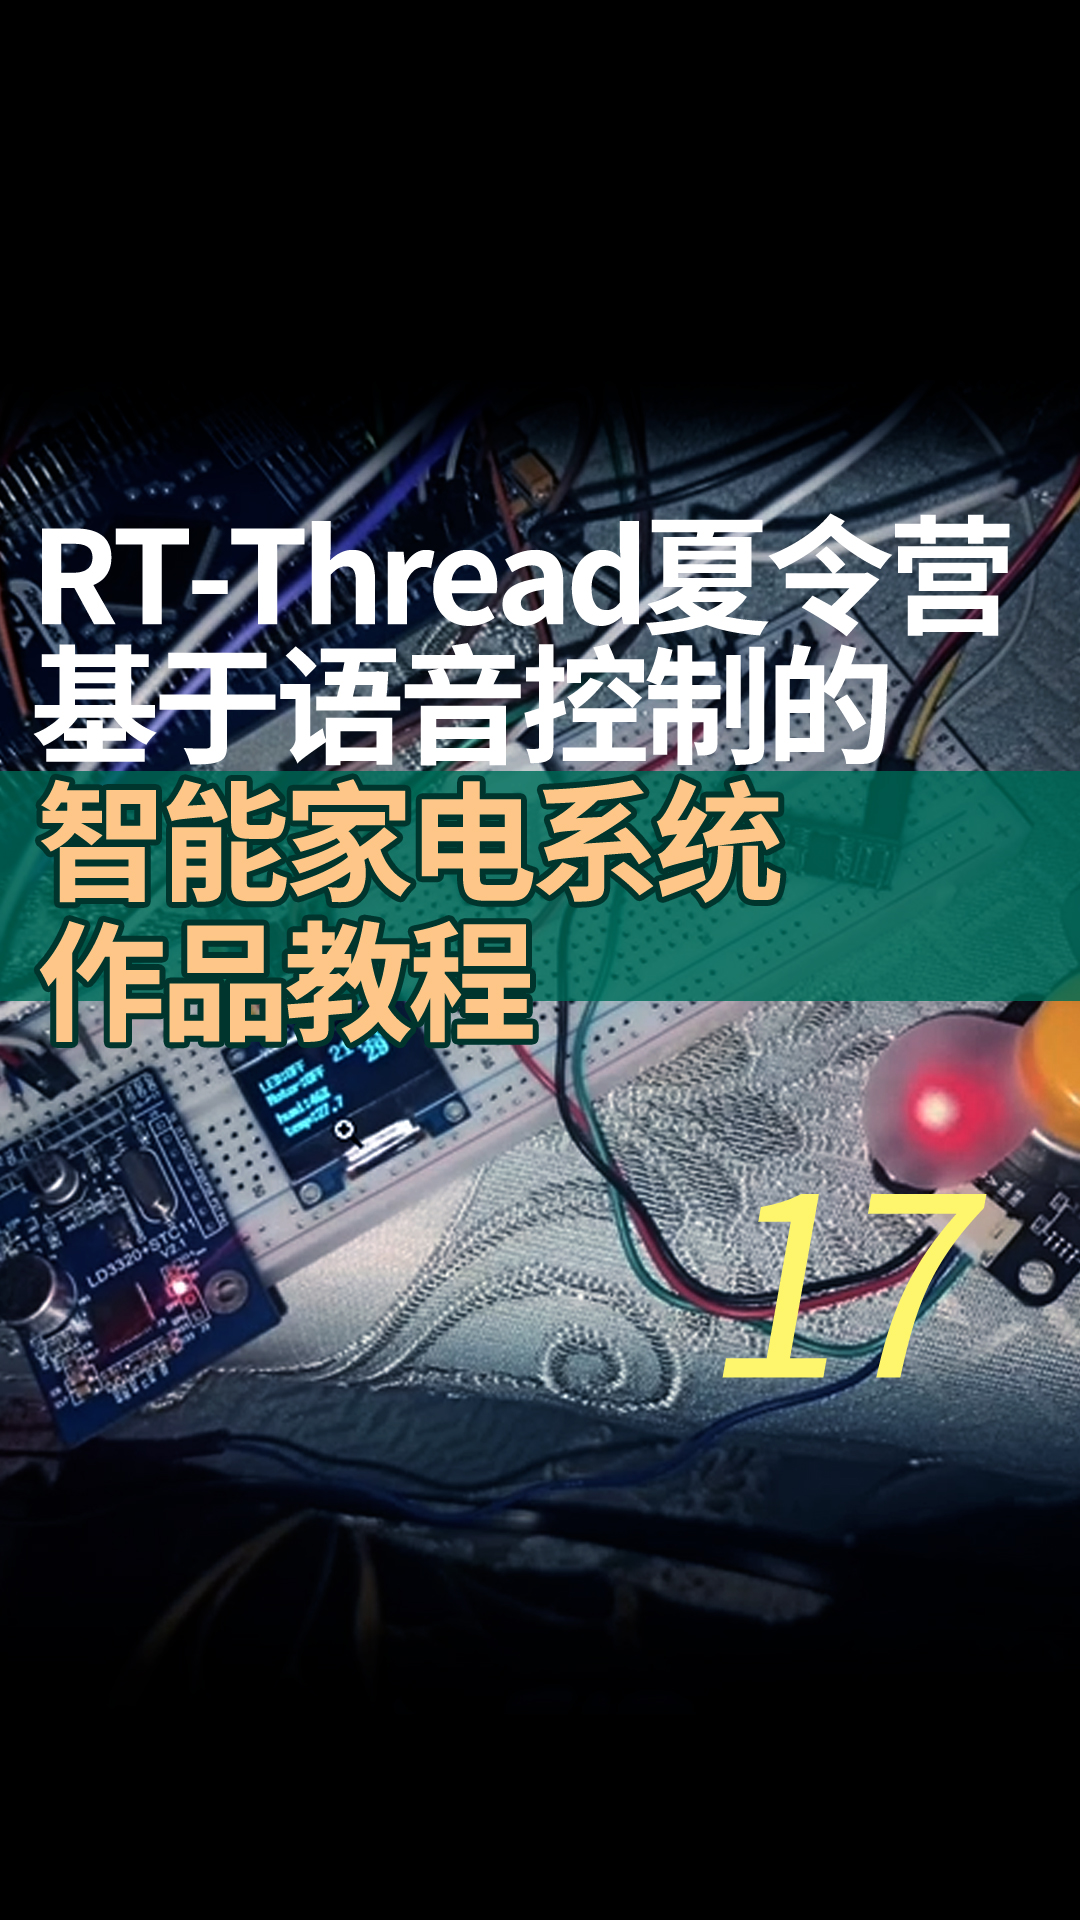 RT-Thread夏令营基于语音控制的智能家电系统作品教程17 软件框架，整合